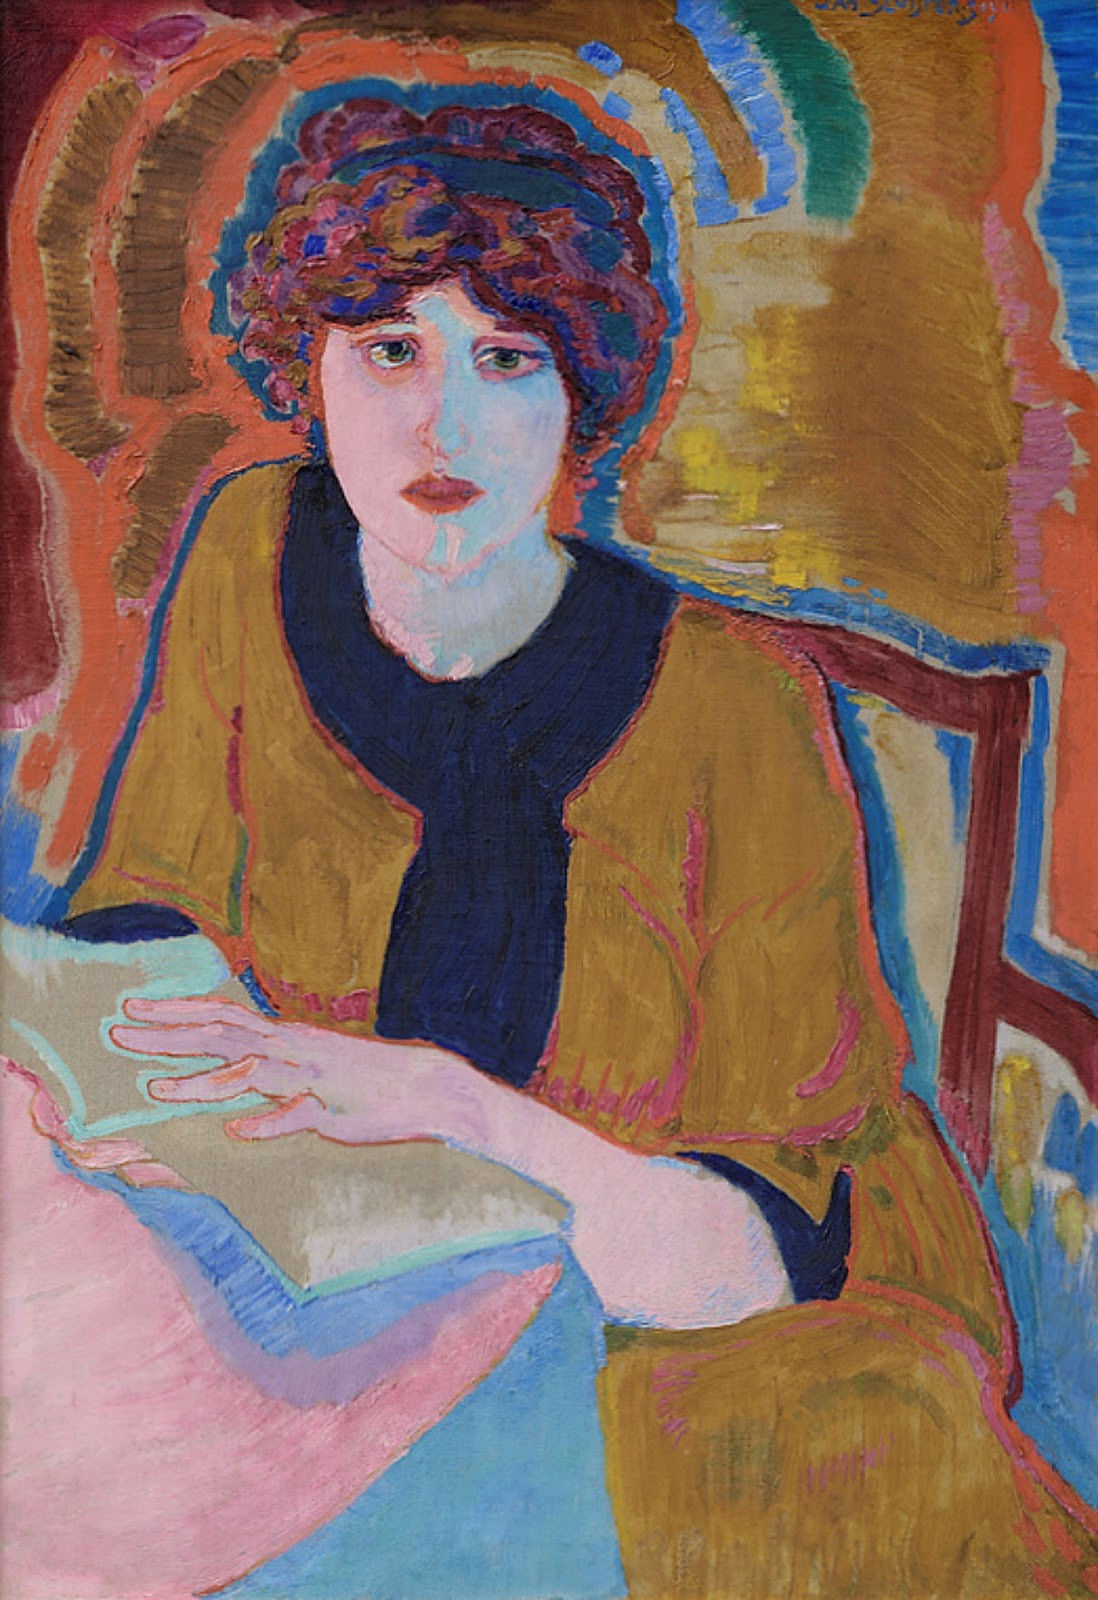 'Reading woman' (Greet van Cooten), 1911, Jan Sluijters